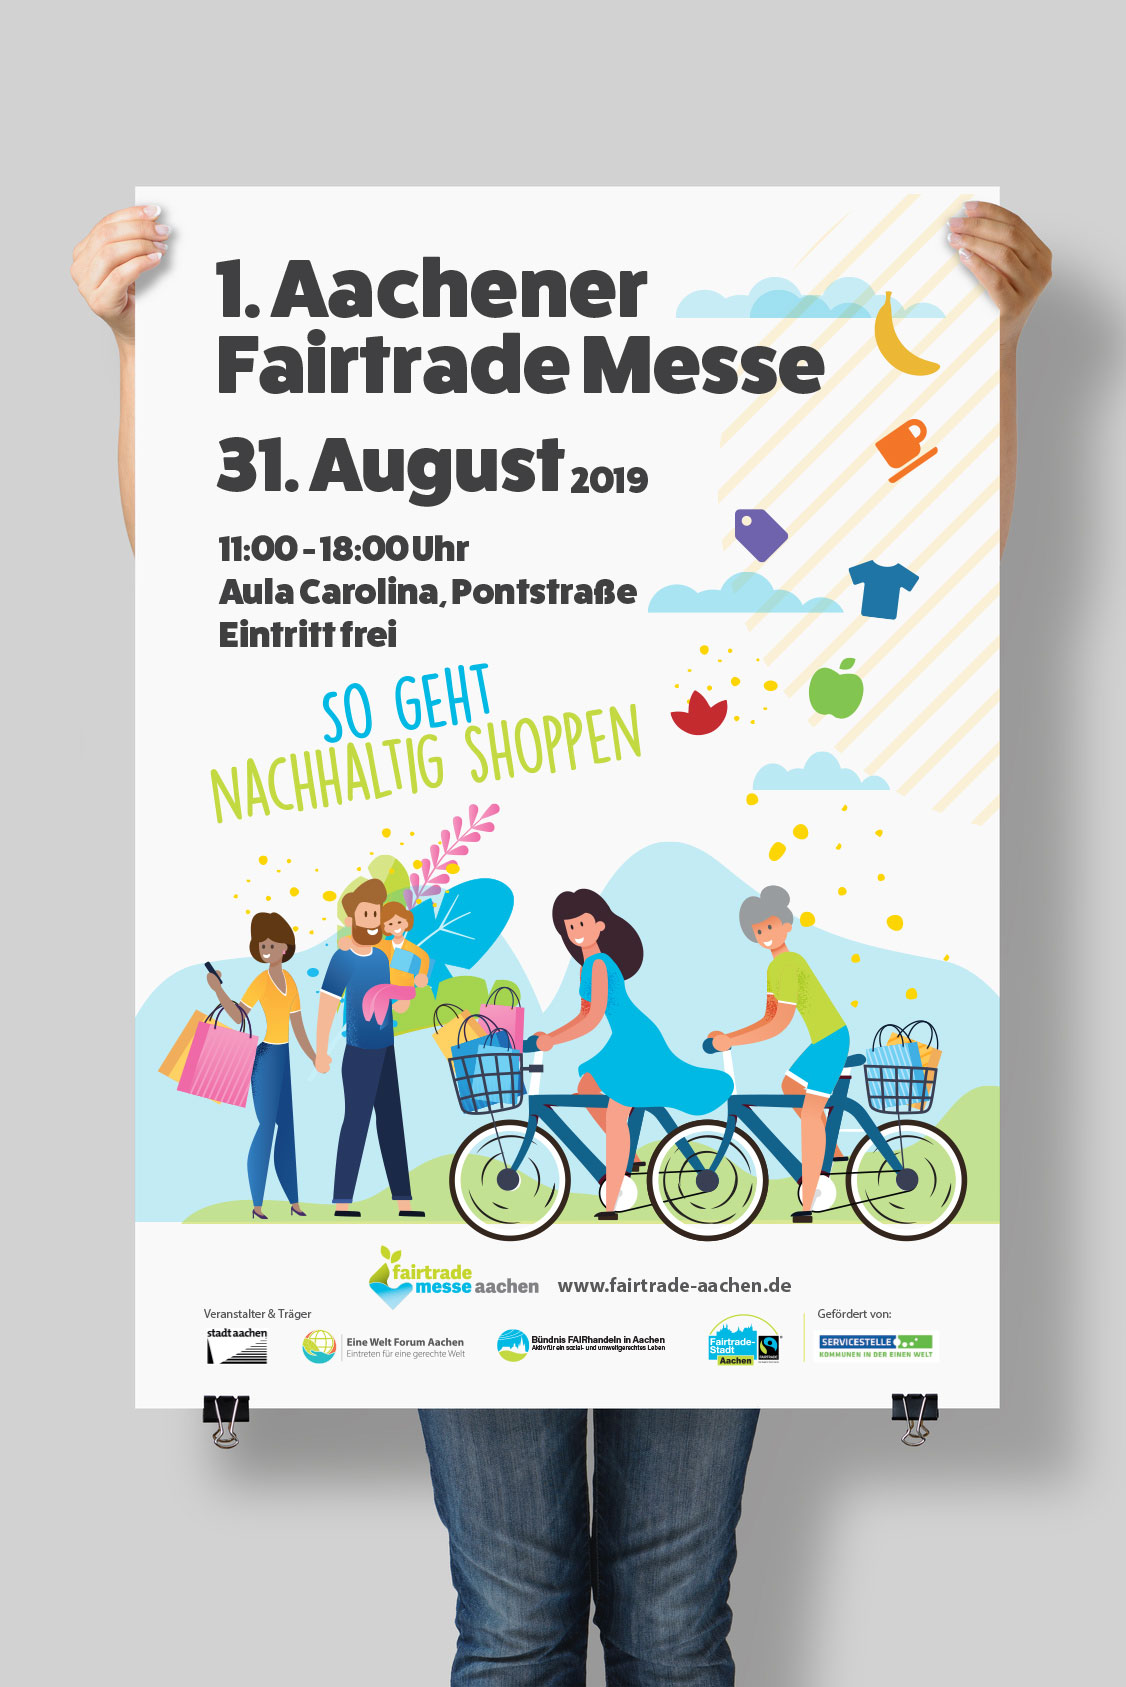 Fairtrade Messe Aachen 2019